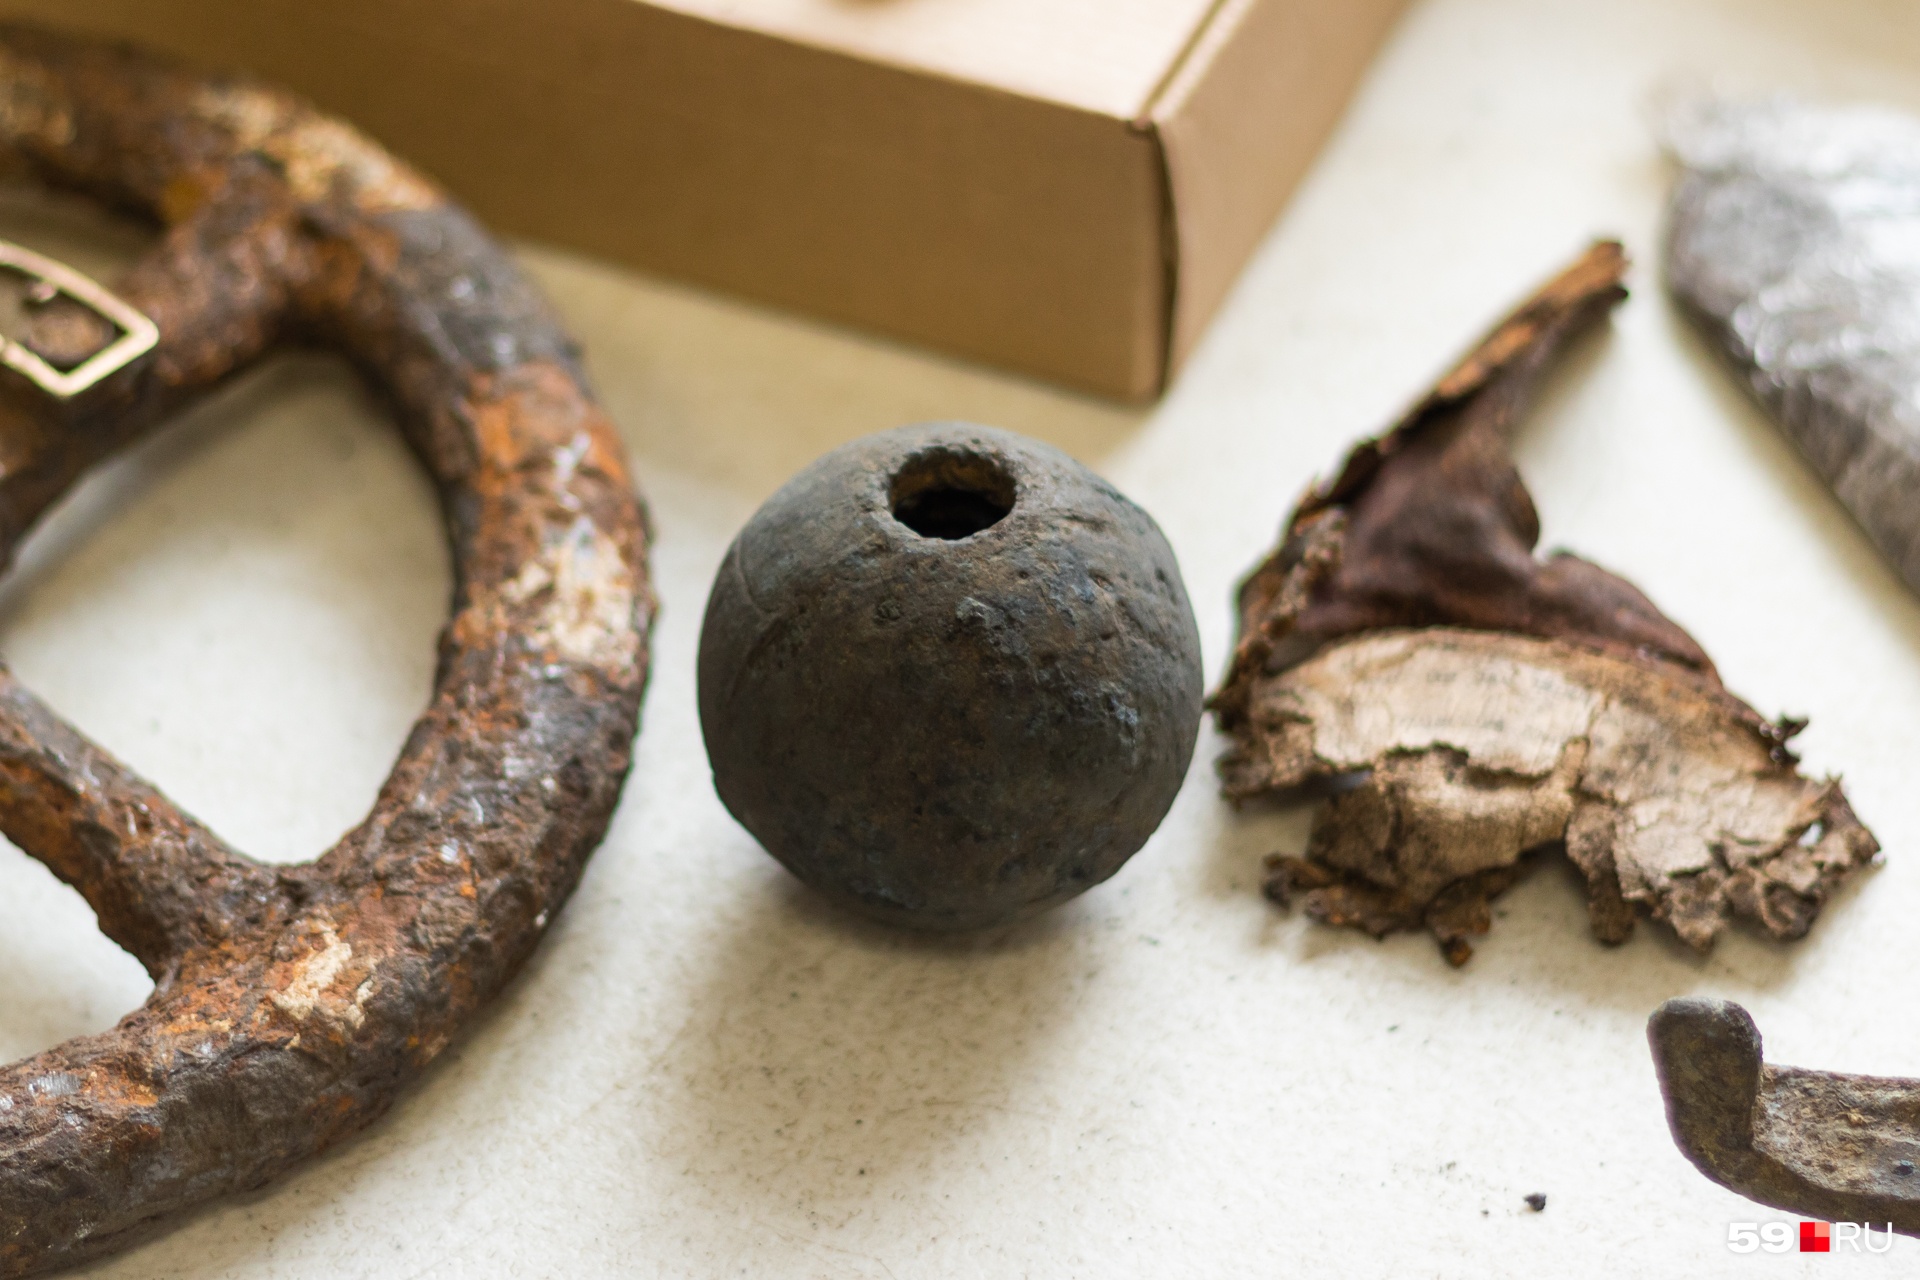 Круглый предмет — ручная граната, рядом часть кожаного предмета с надписью на идише